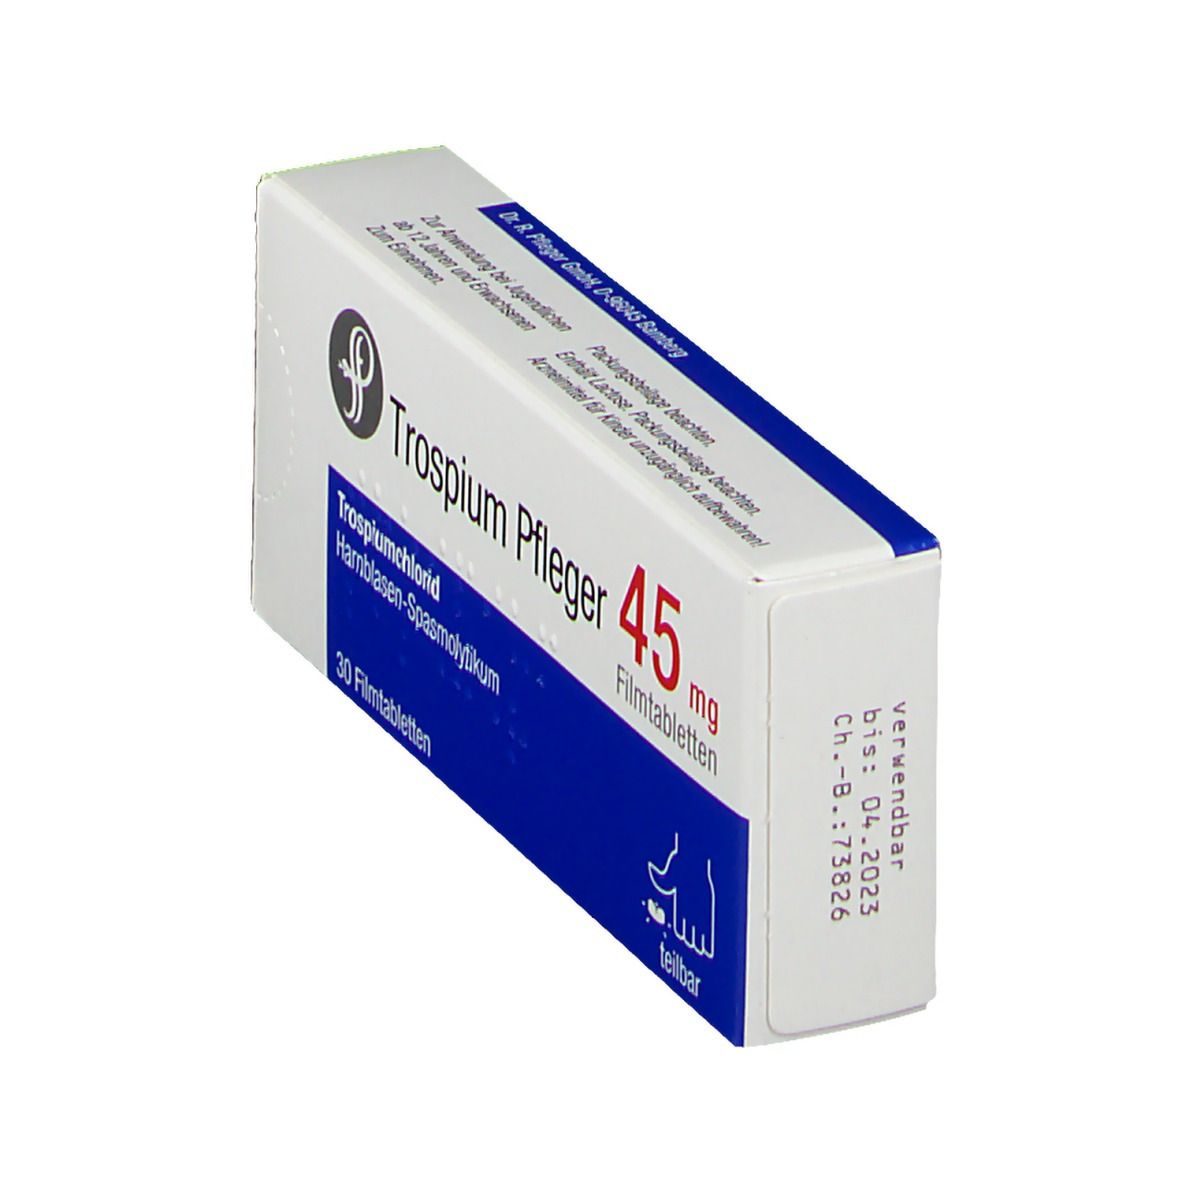 Trospium Pfleger 45 mg